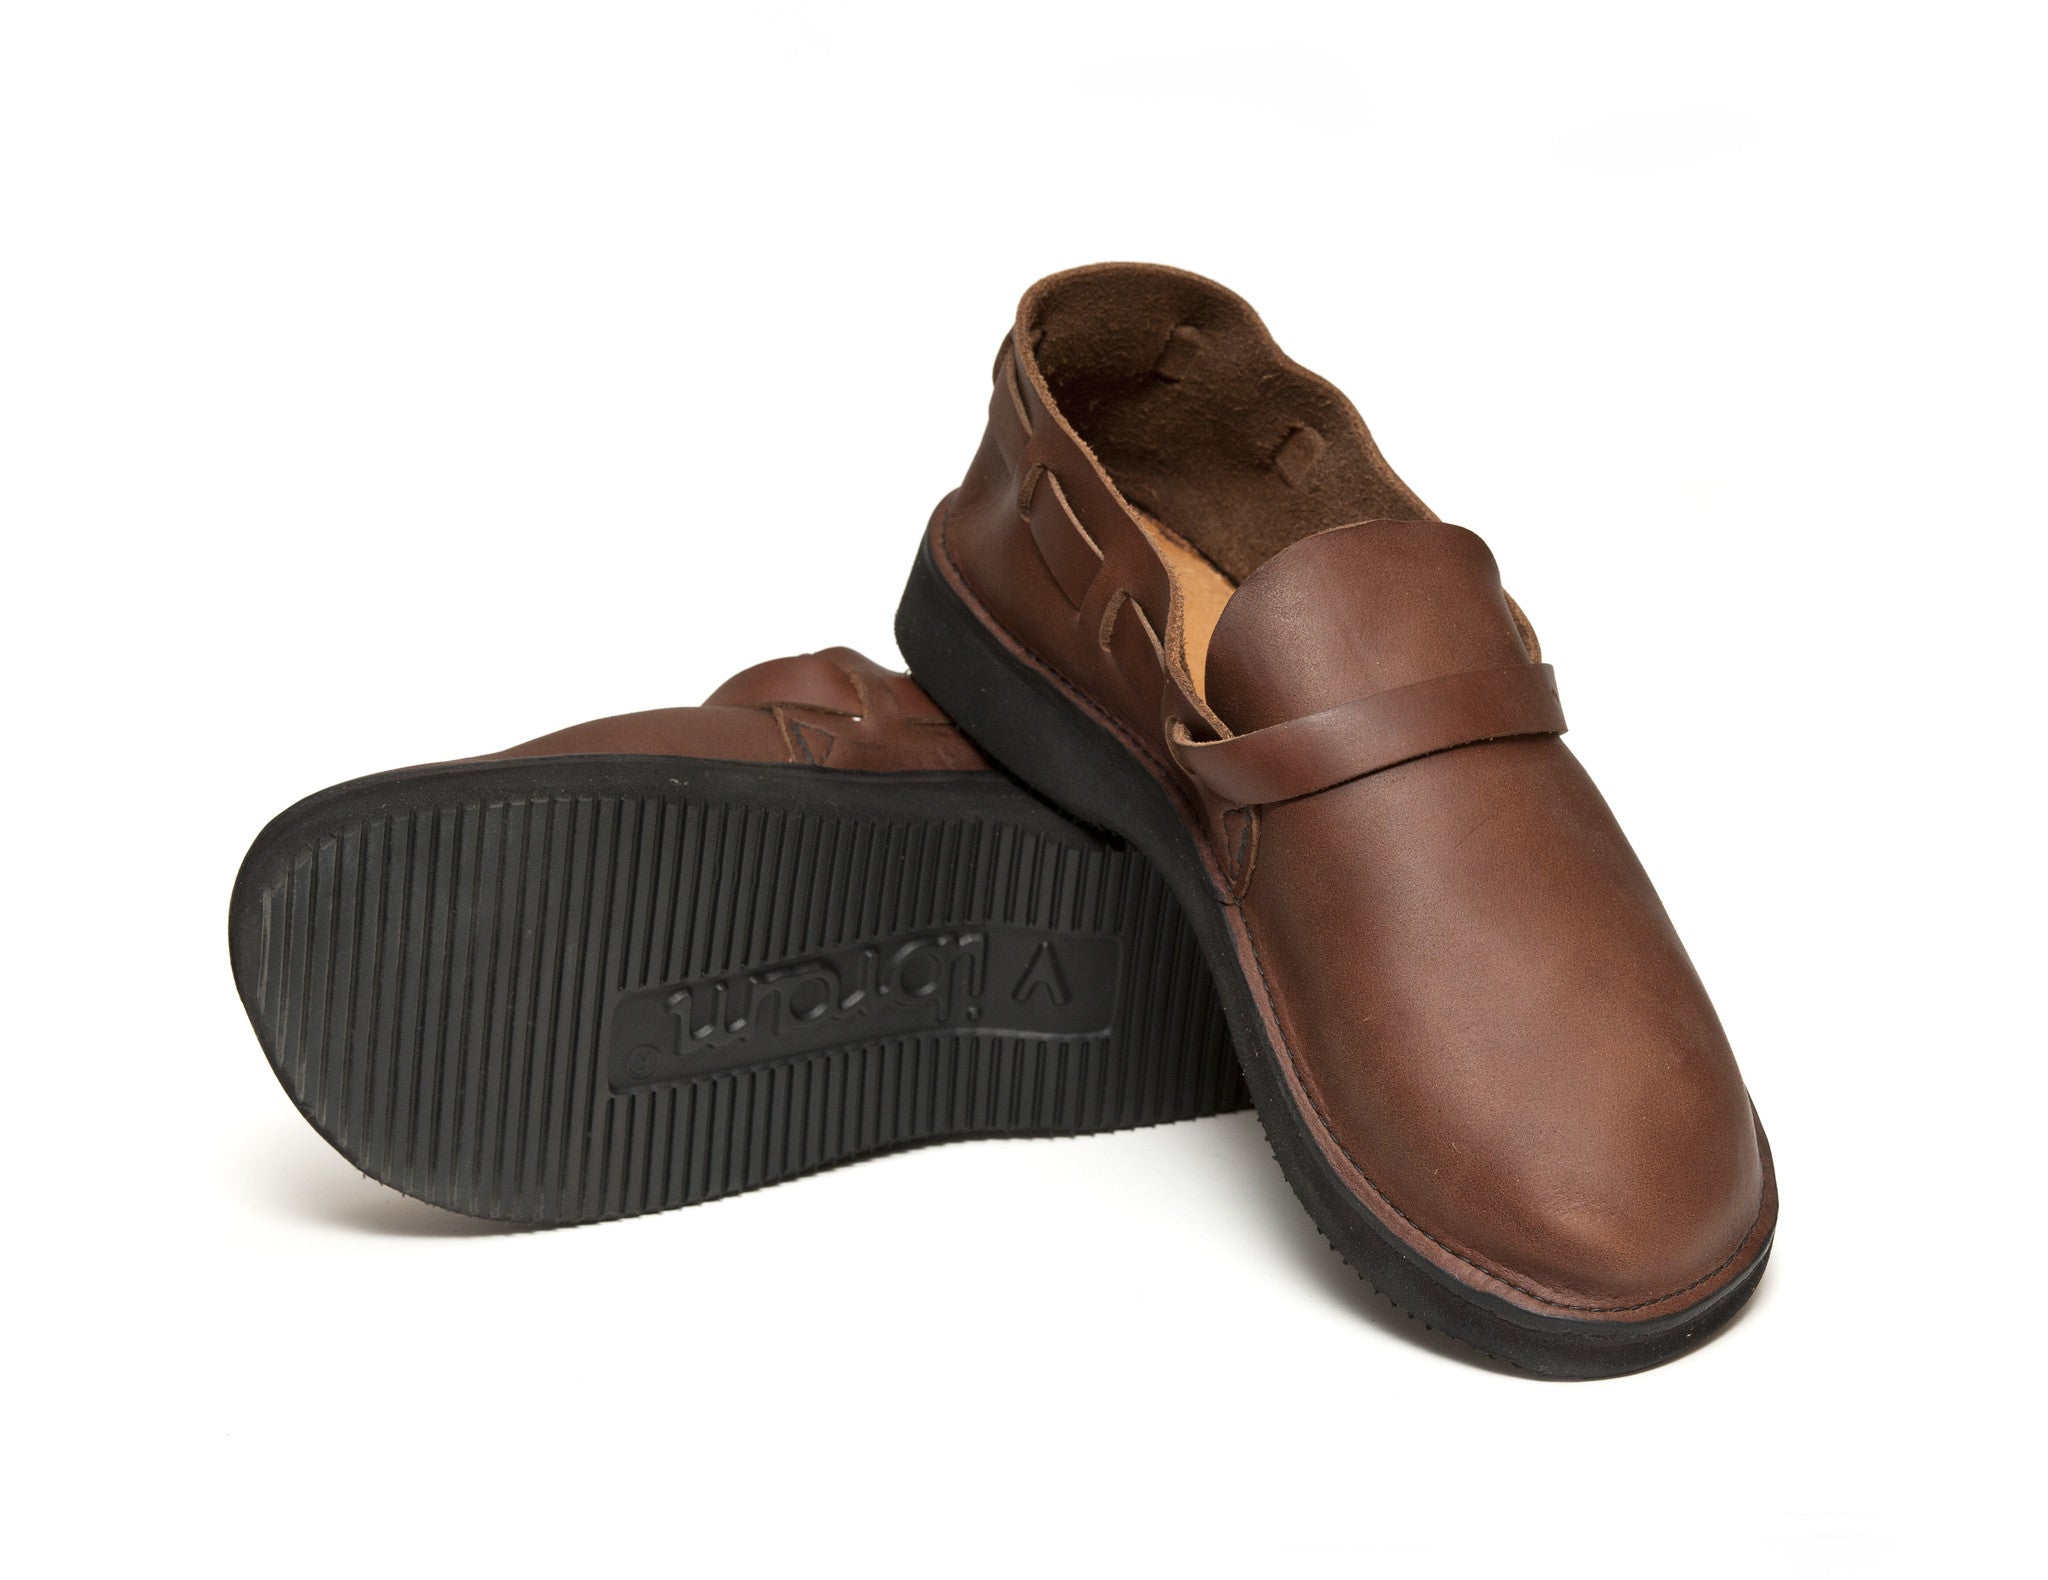 Calzados Losal | Oxford/English Shoe | Men's Shoe | Handmade Shoe |  Goodyear Welted Shoe | Shoe Made in Spain | Artisan Shoes | Berlin Model,  brown, 9 UK: Amazon.co.uk: Fashion